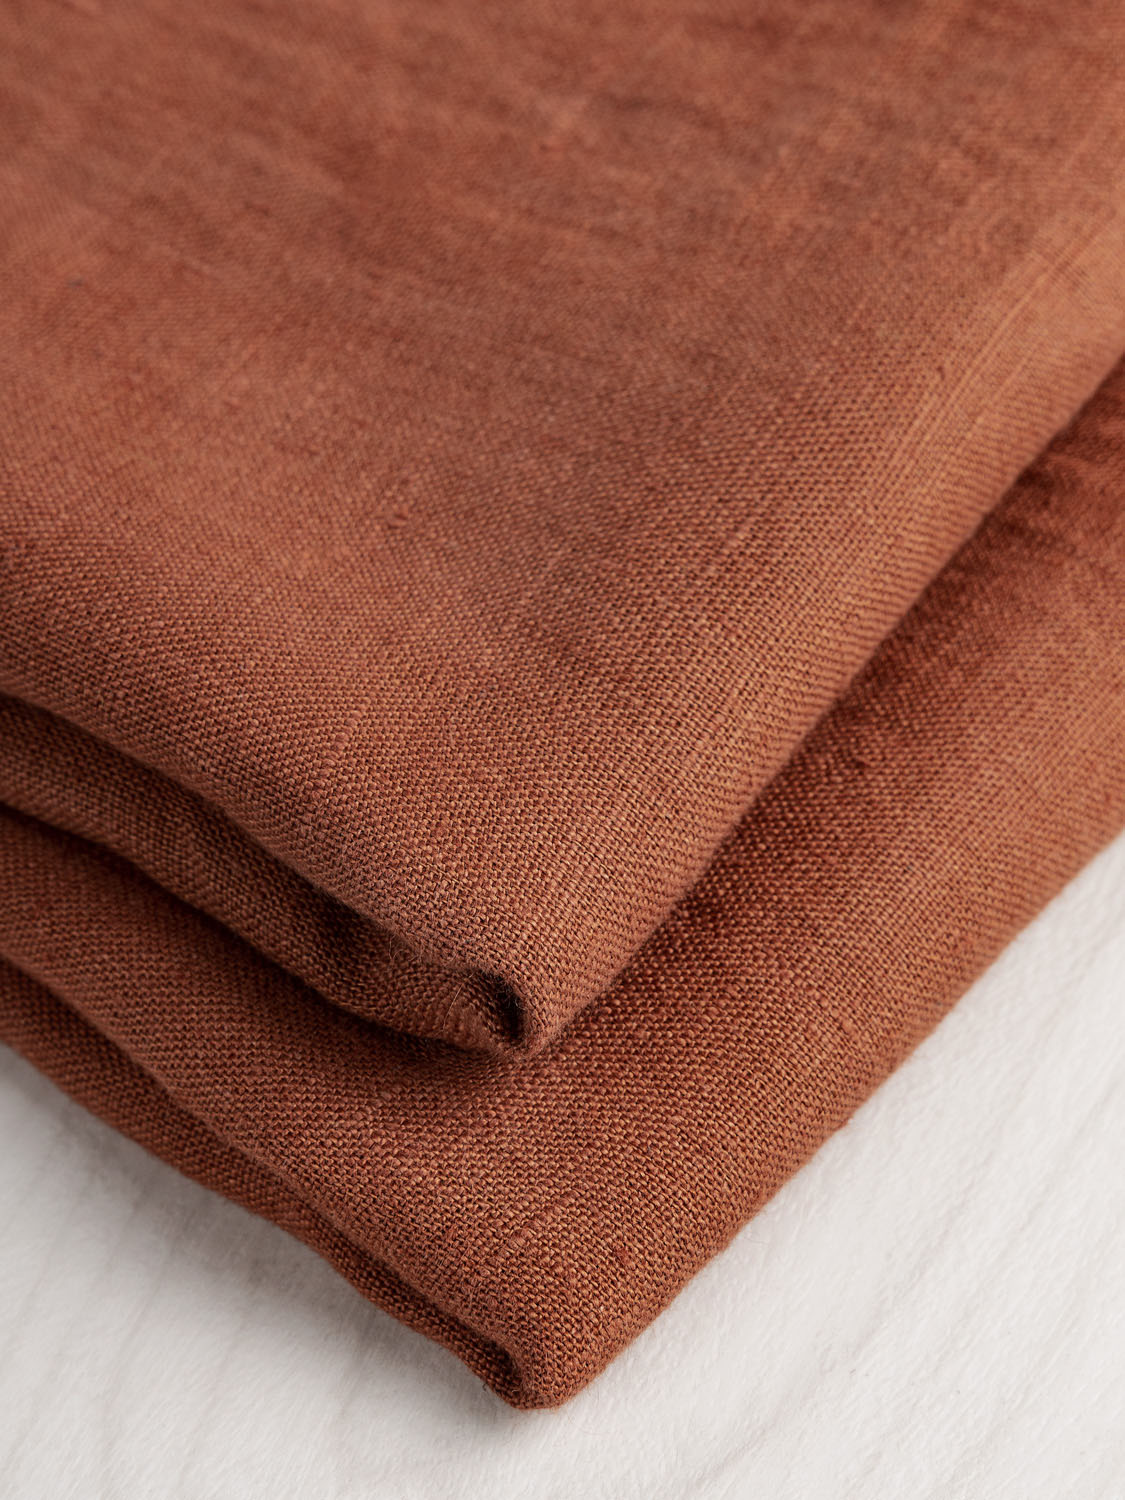 Midweight European Linen - Copper | Core Fabrics